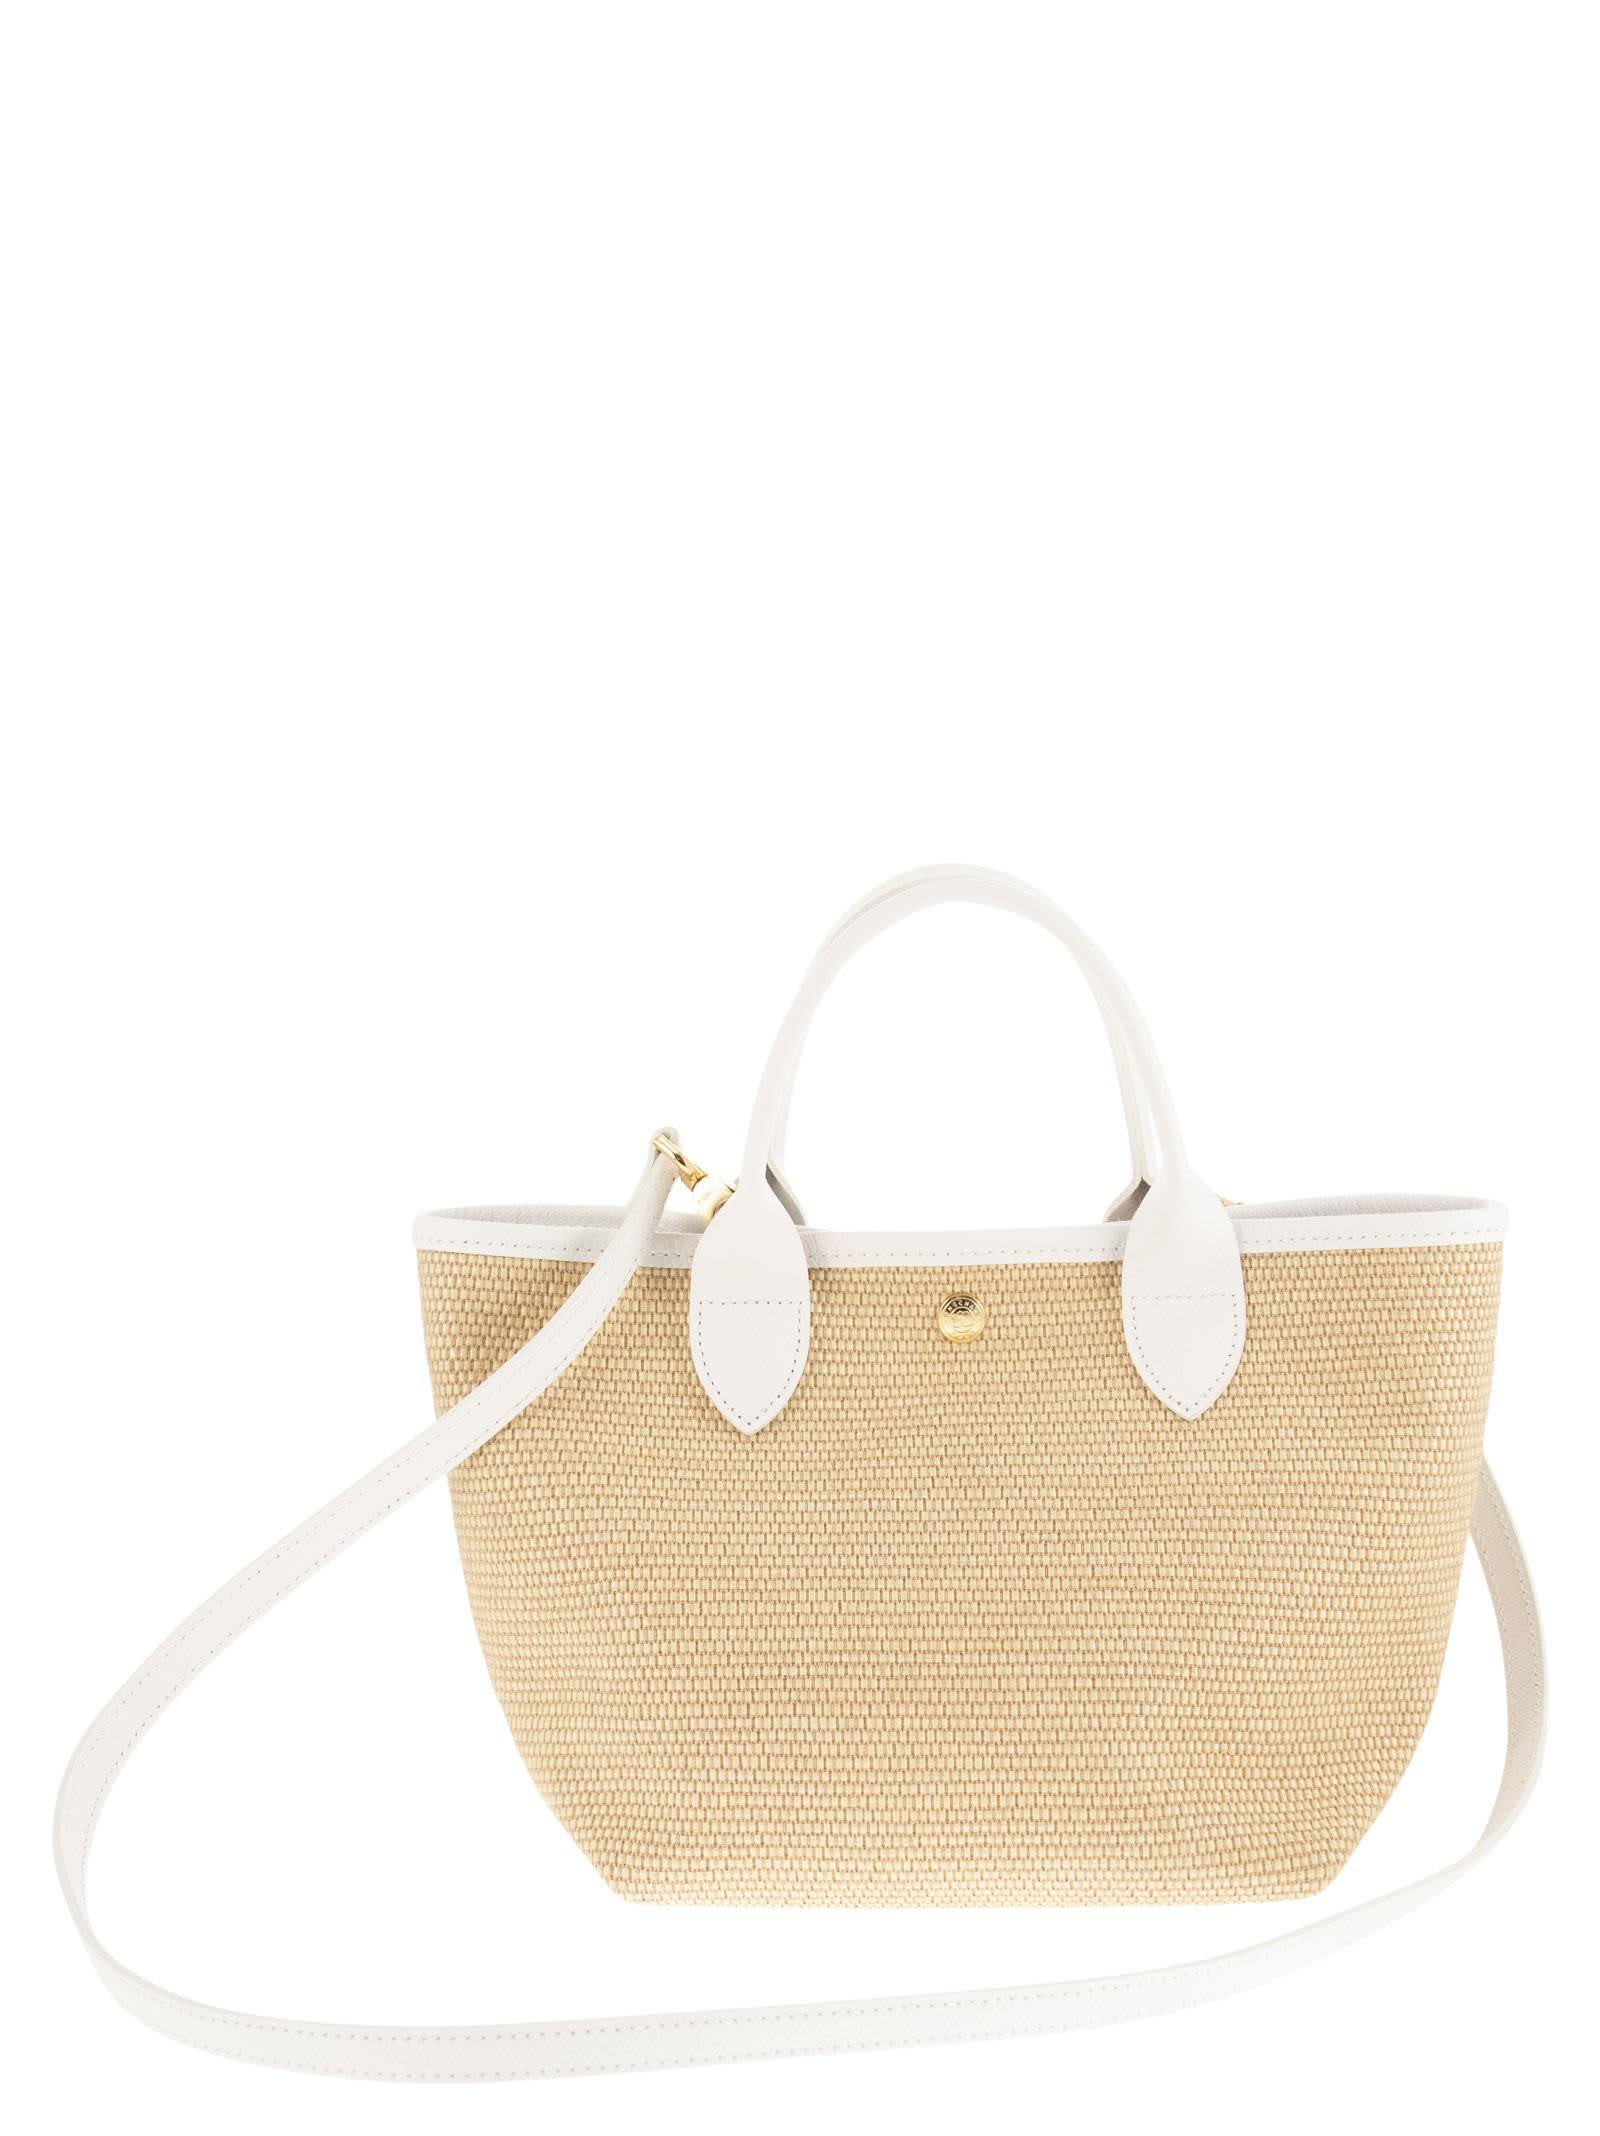 Longchamp Women's Woven Canvas Basket Bag - White